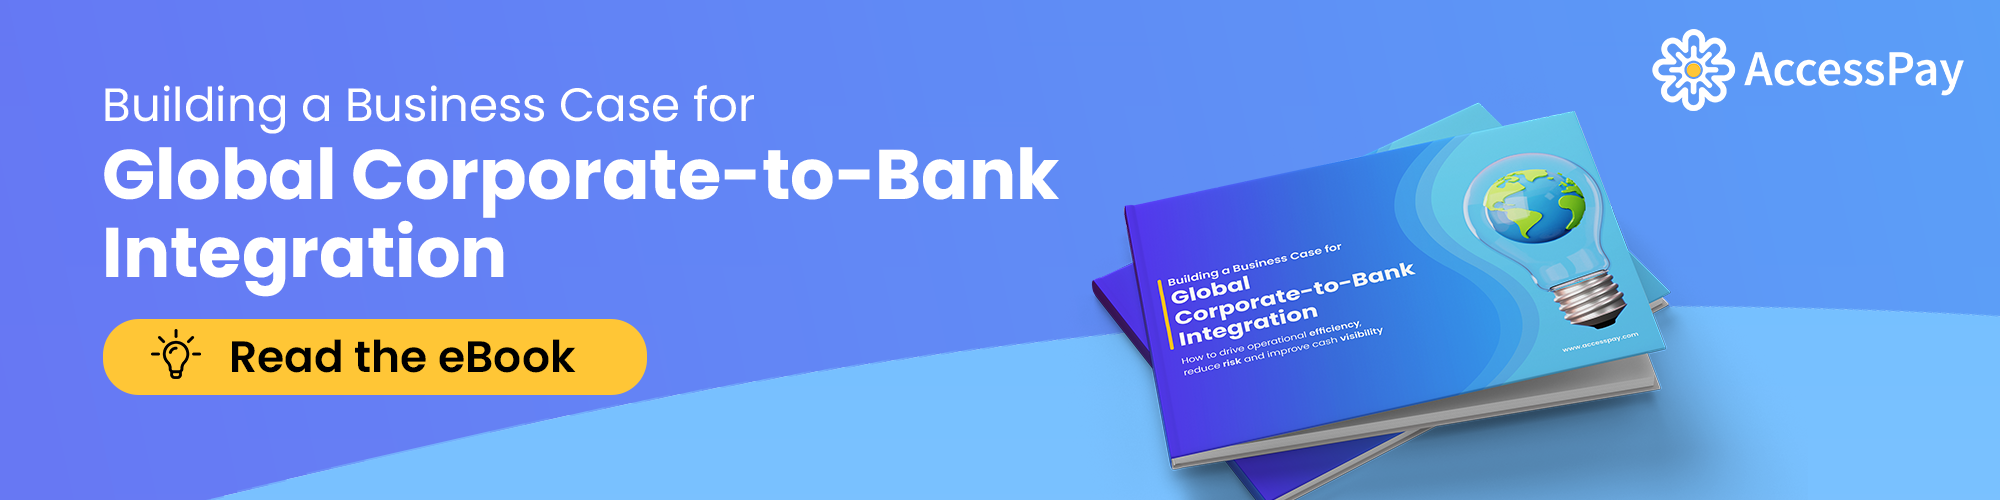 integrazione azienda-banca-libro-cta-banner